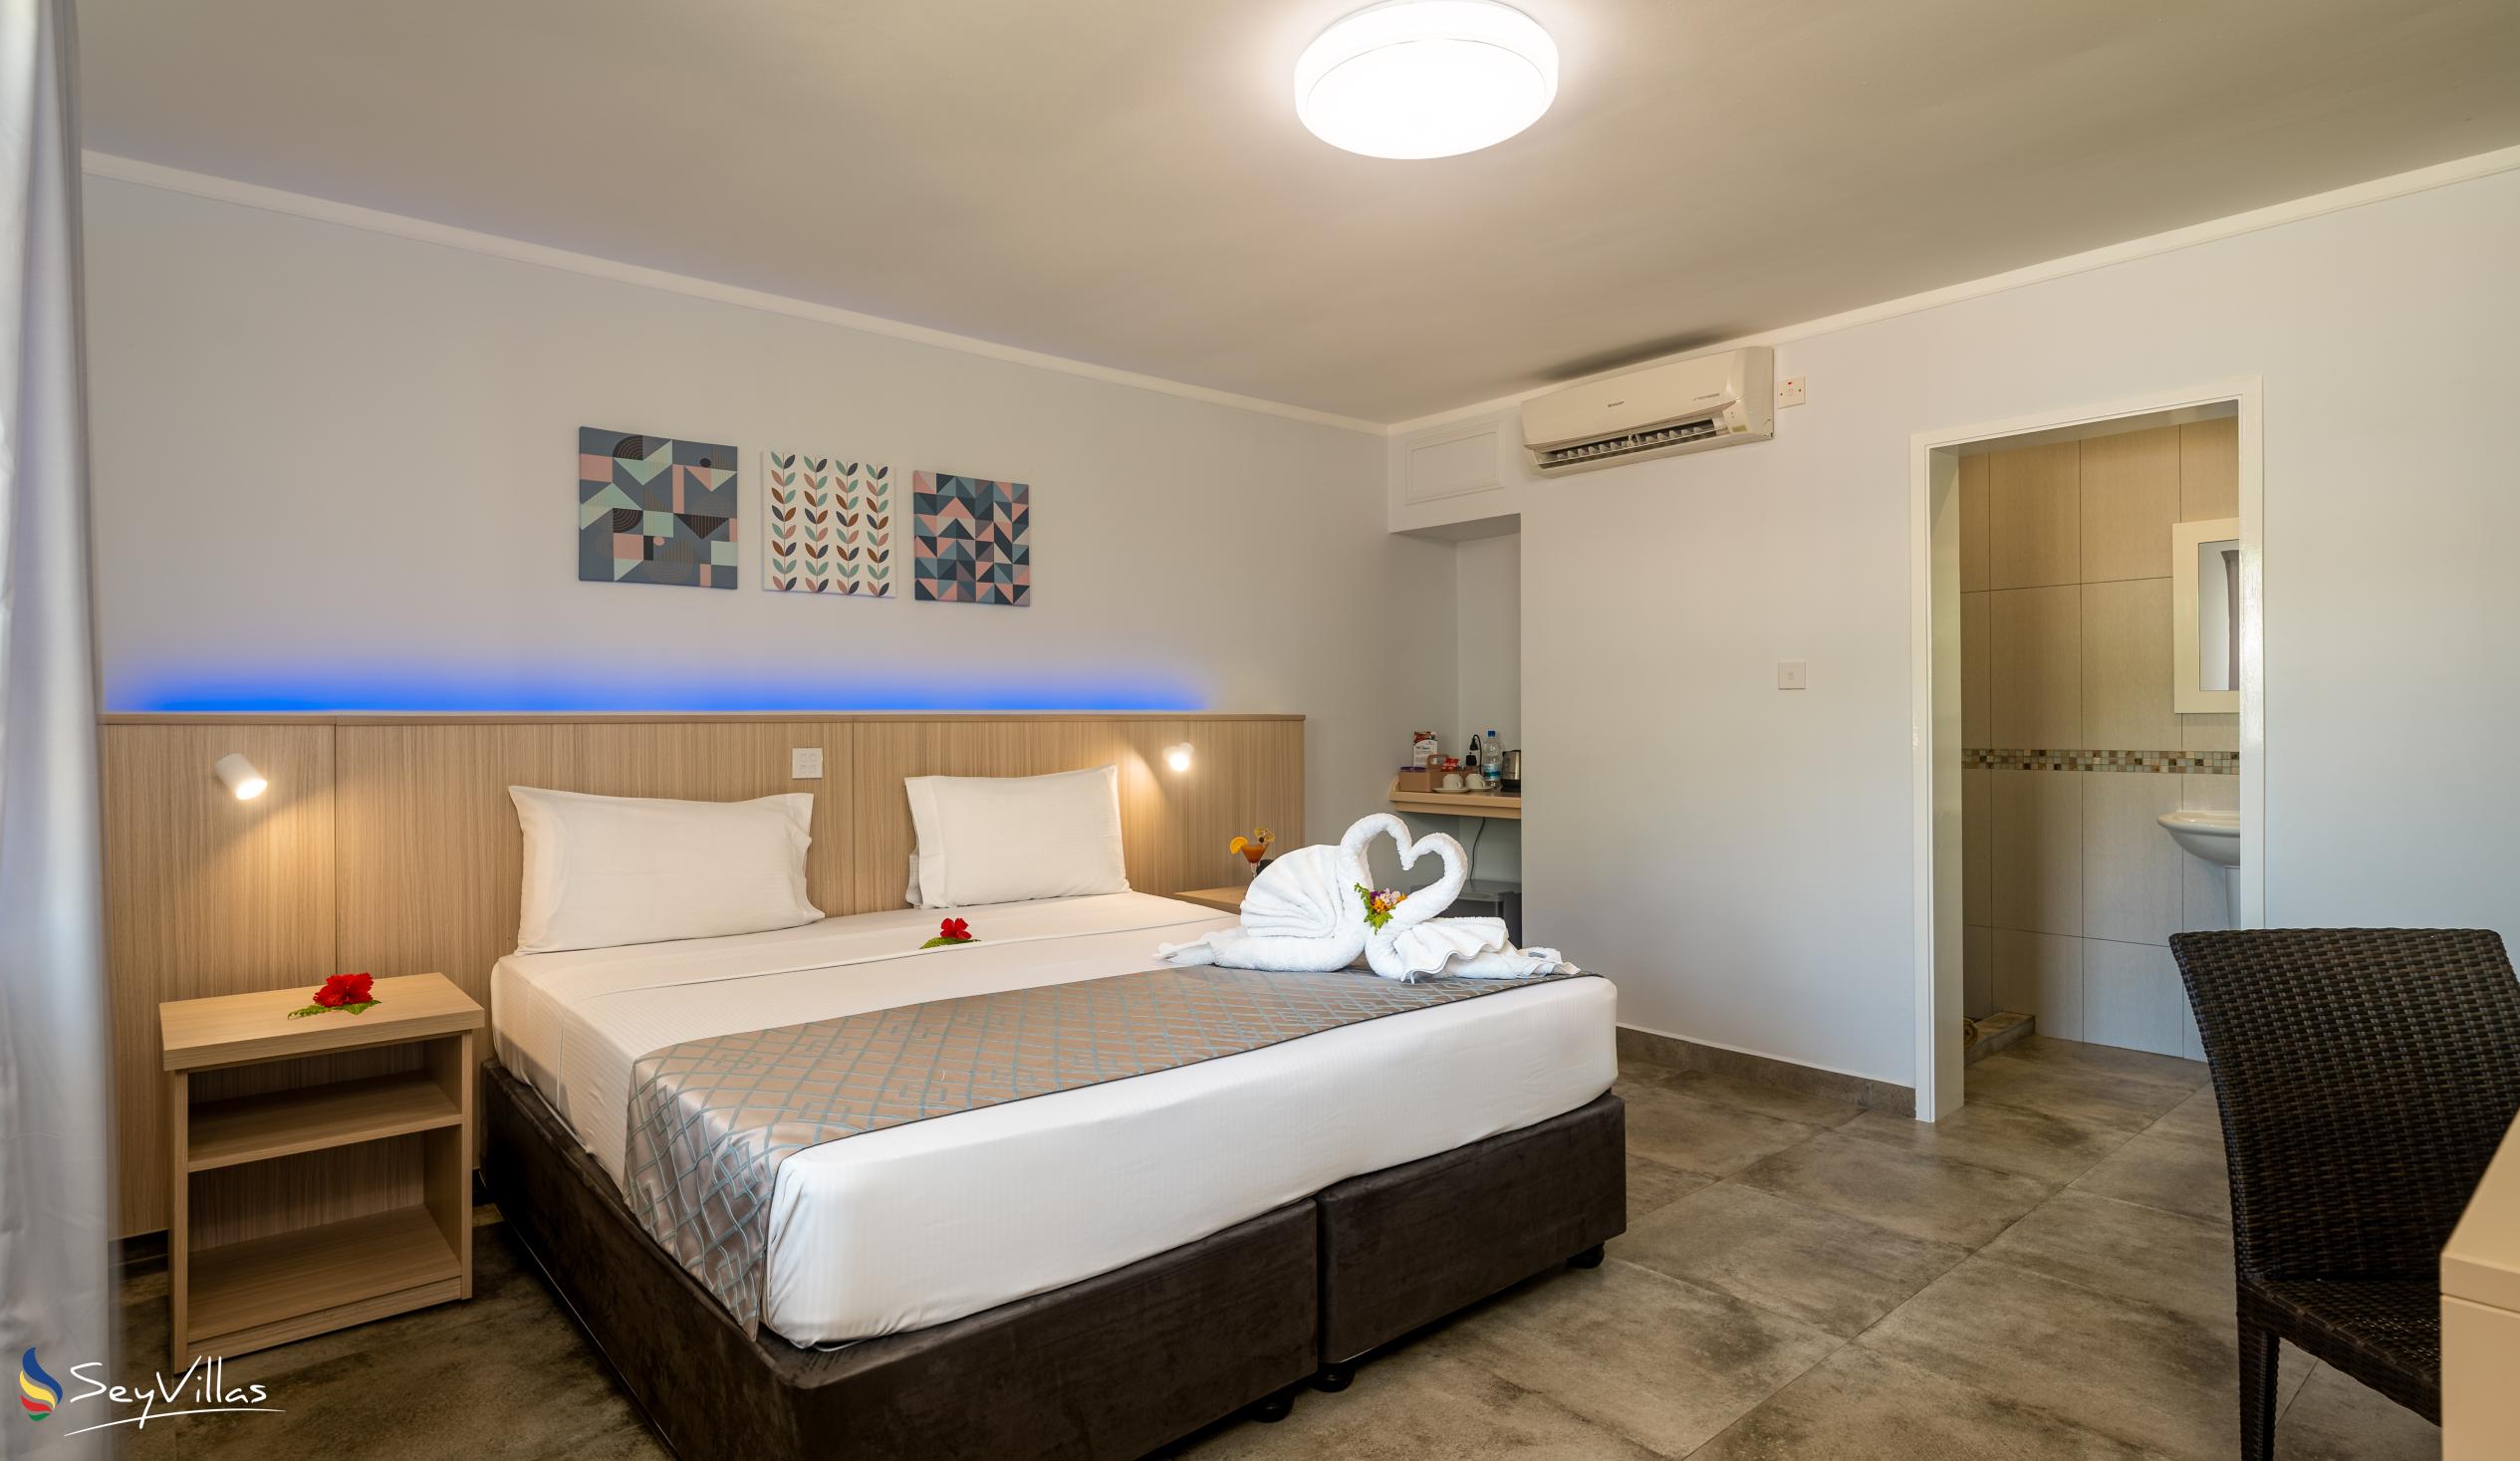 Photo 70: Hotel La Roussette - Superior Room - Mahé (Seychelles)